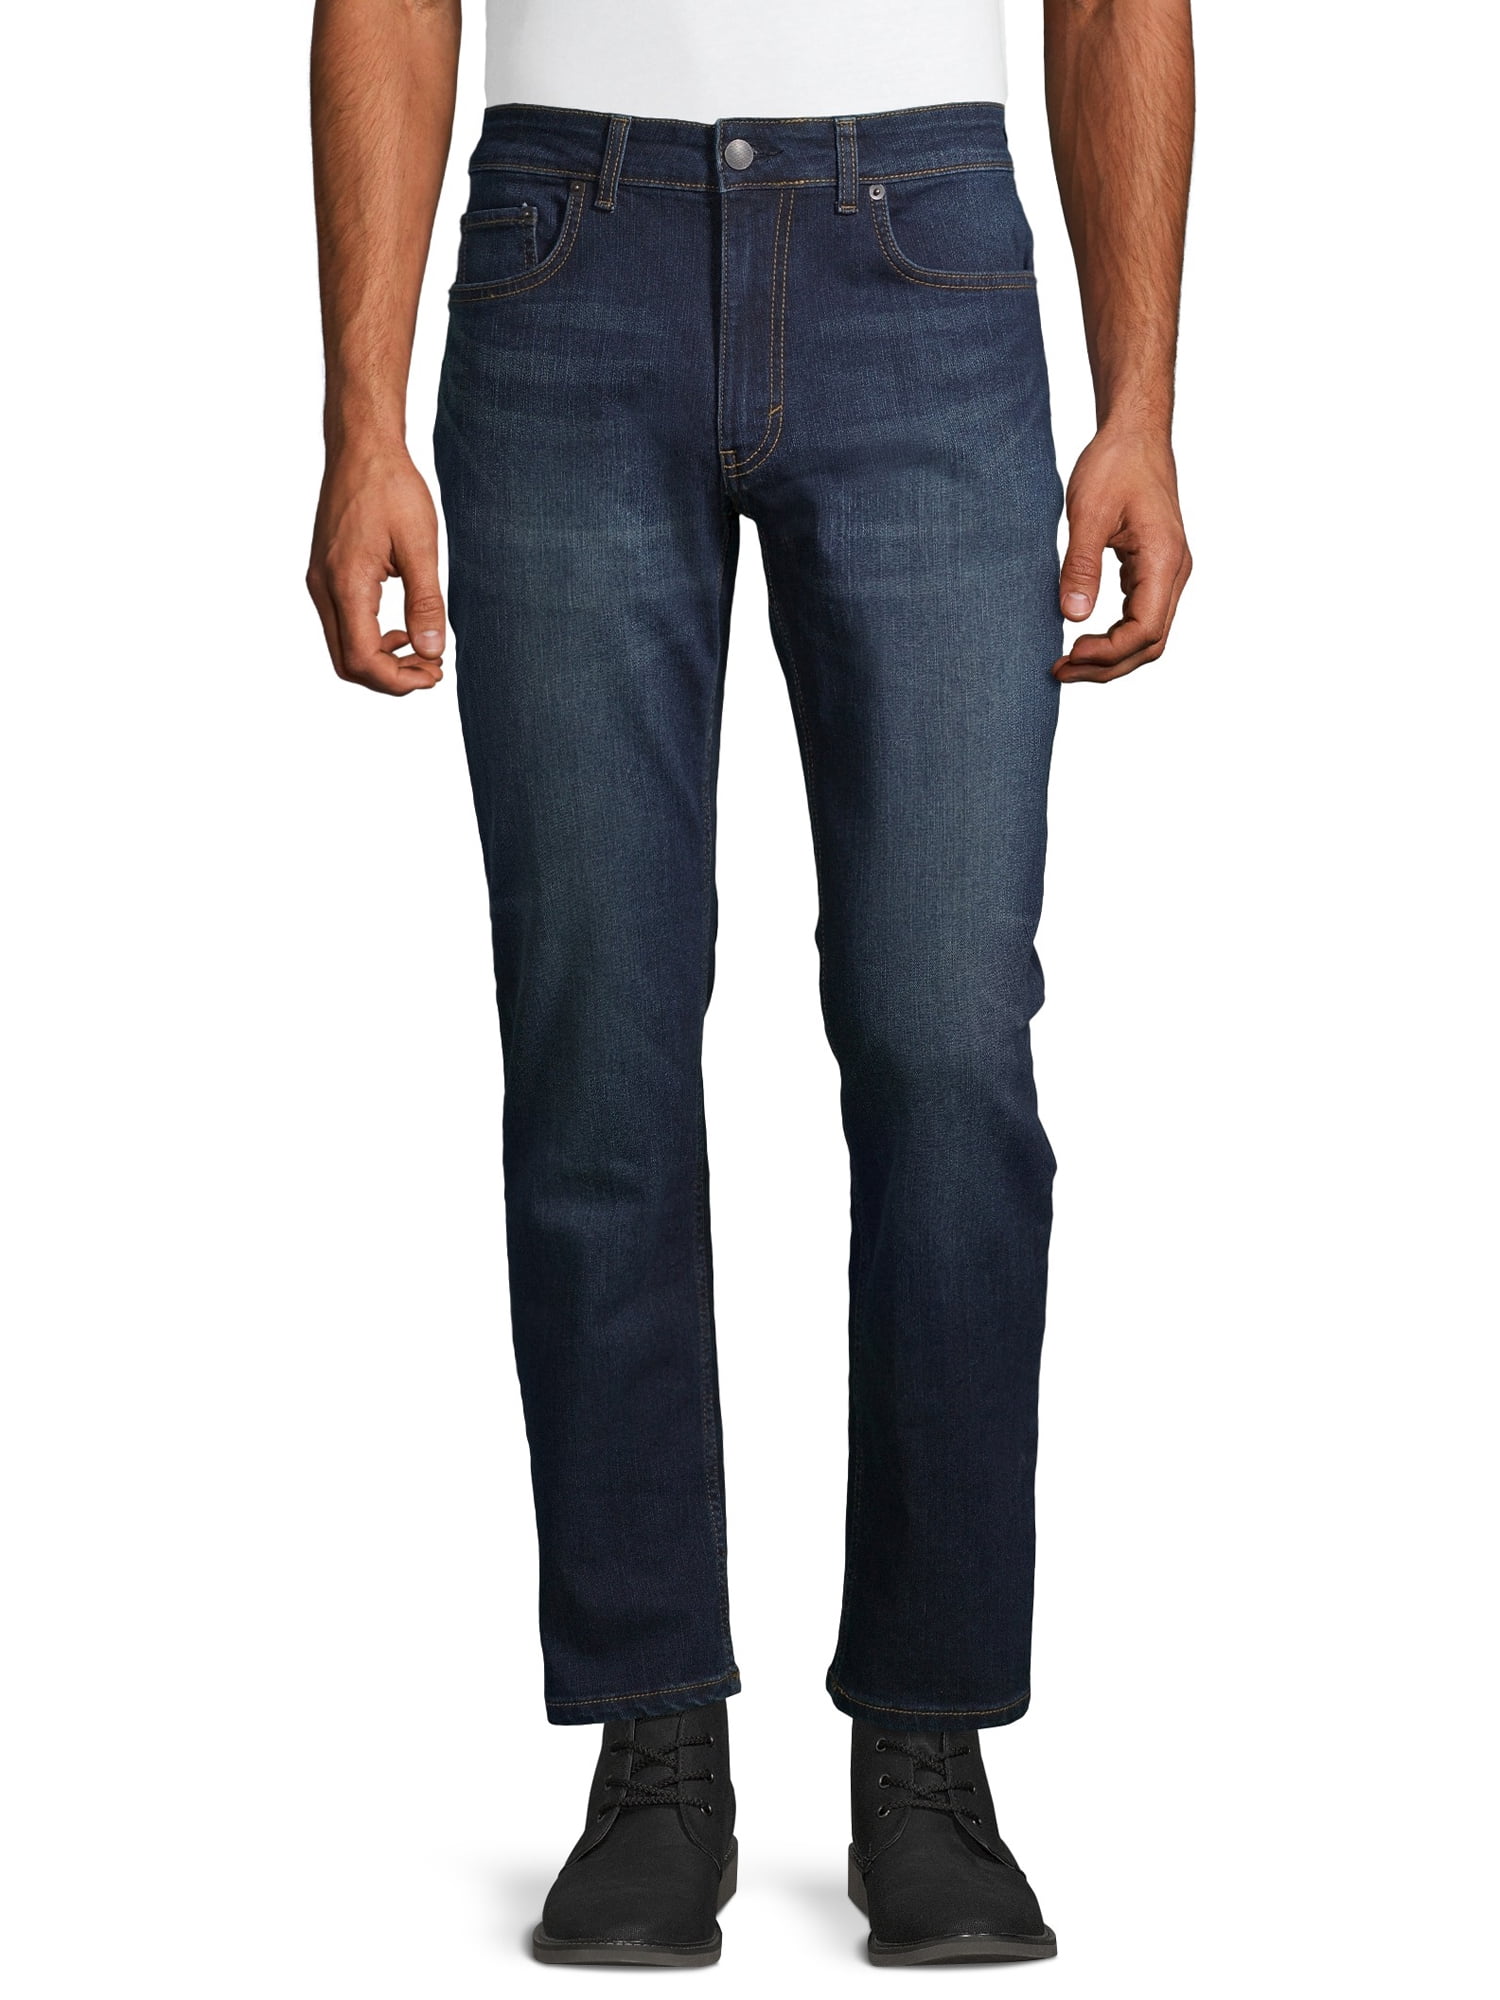 George Men's Premium Denim Jeans - Walmart.com